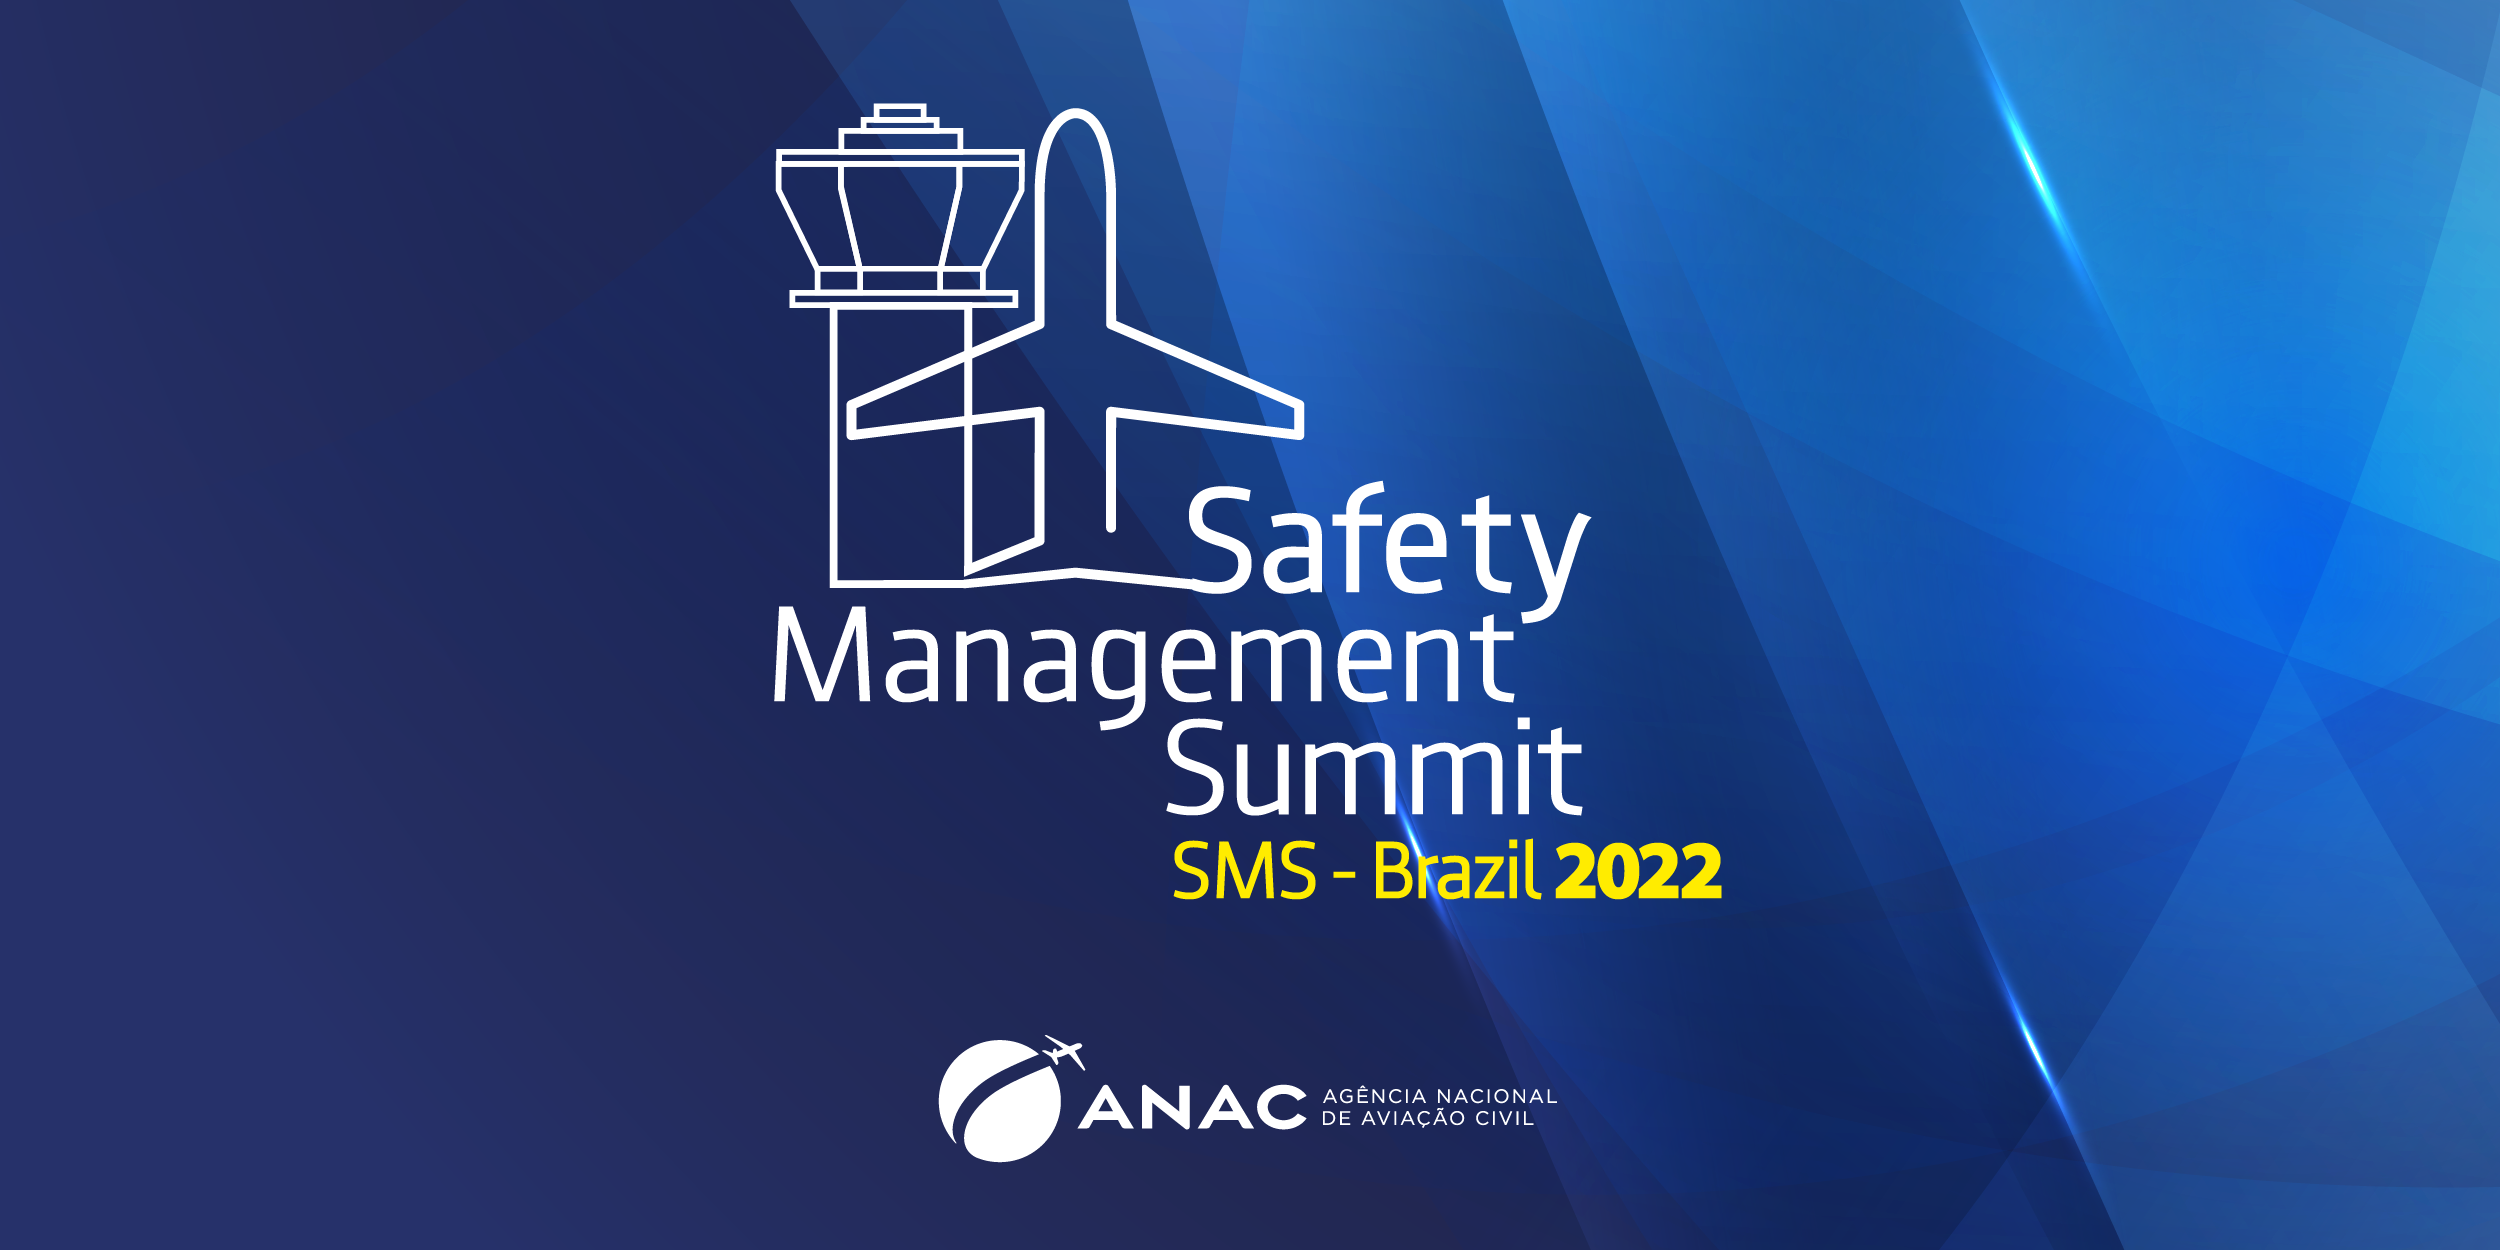 ANAC realizará evento internacional de segurança operacional em São Paulo  nos dias 15 e 16/12 — Agência Nacional de Aviação Civil (ANAC)